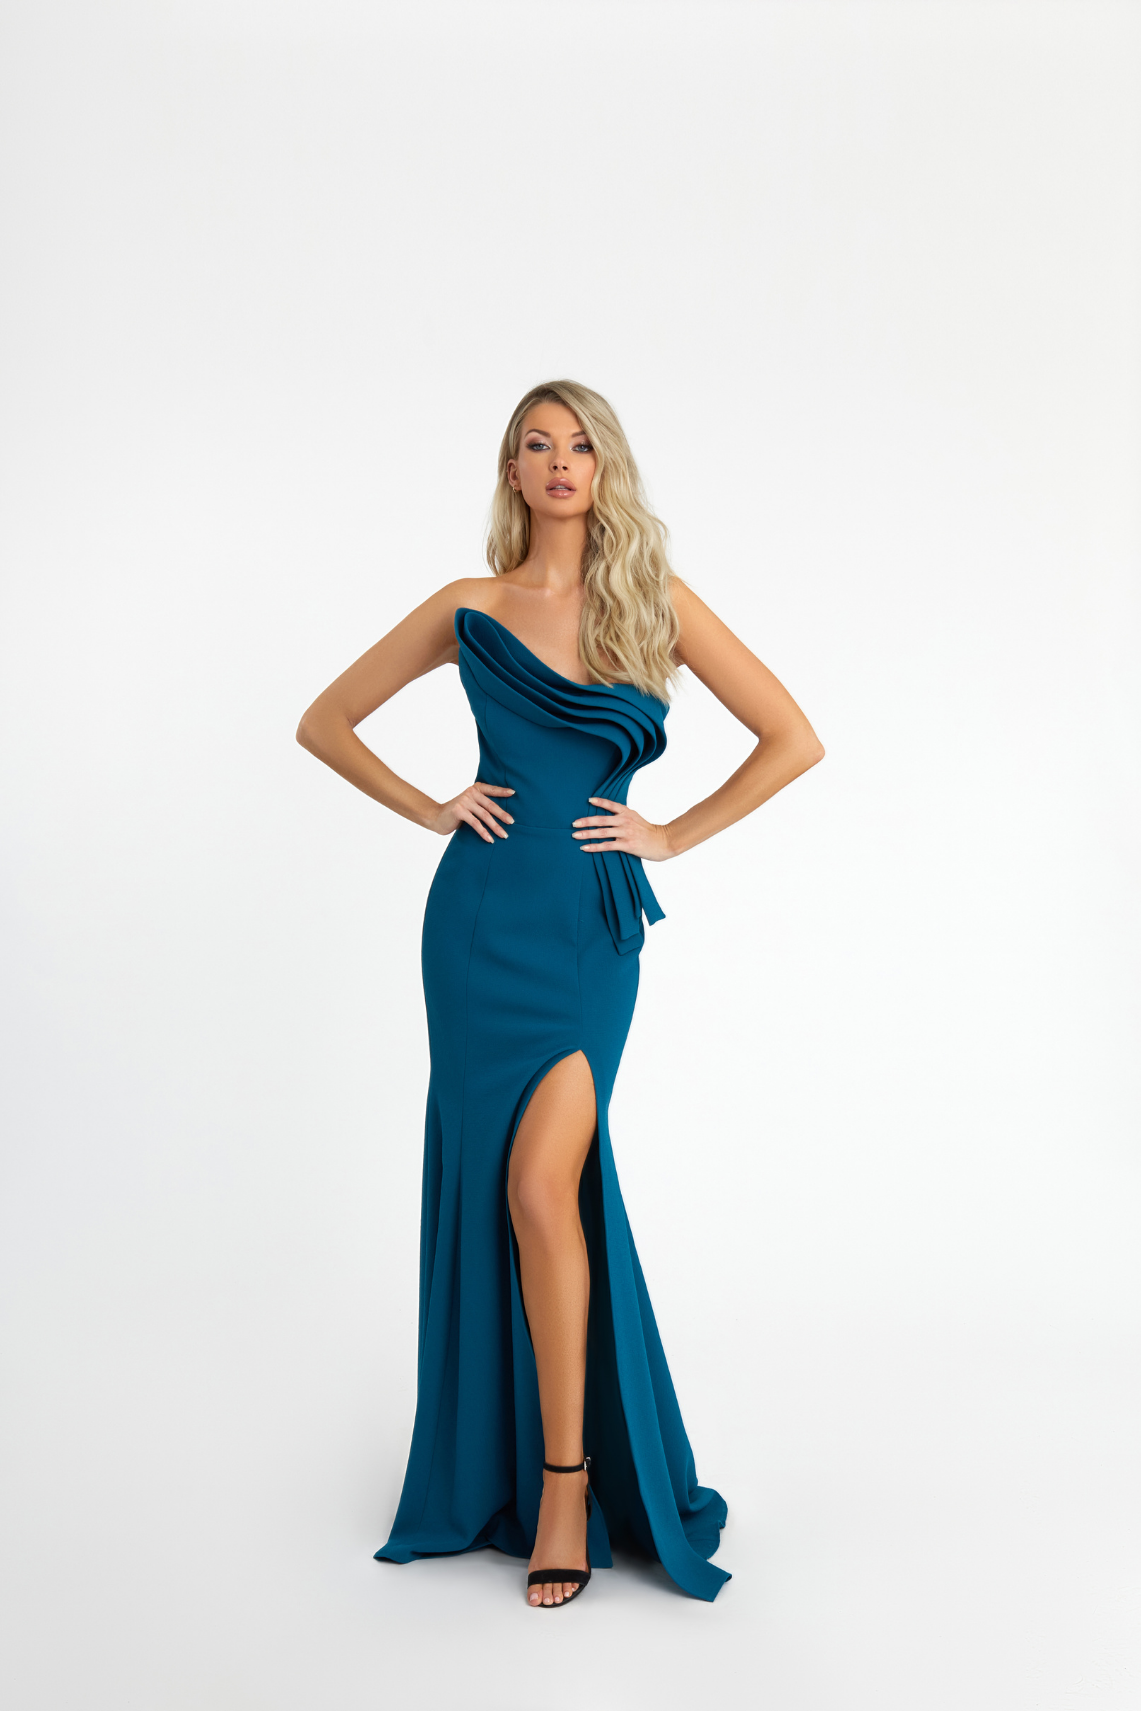 Model wearing a long sea blue gown